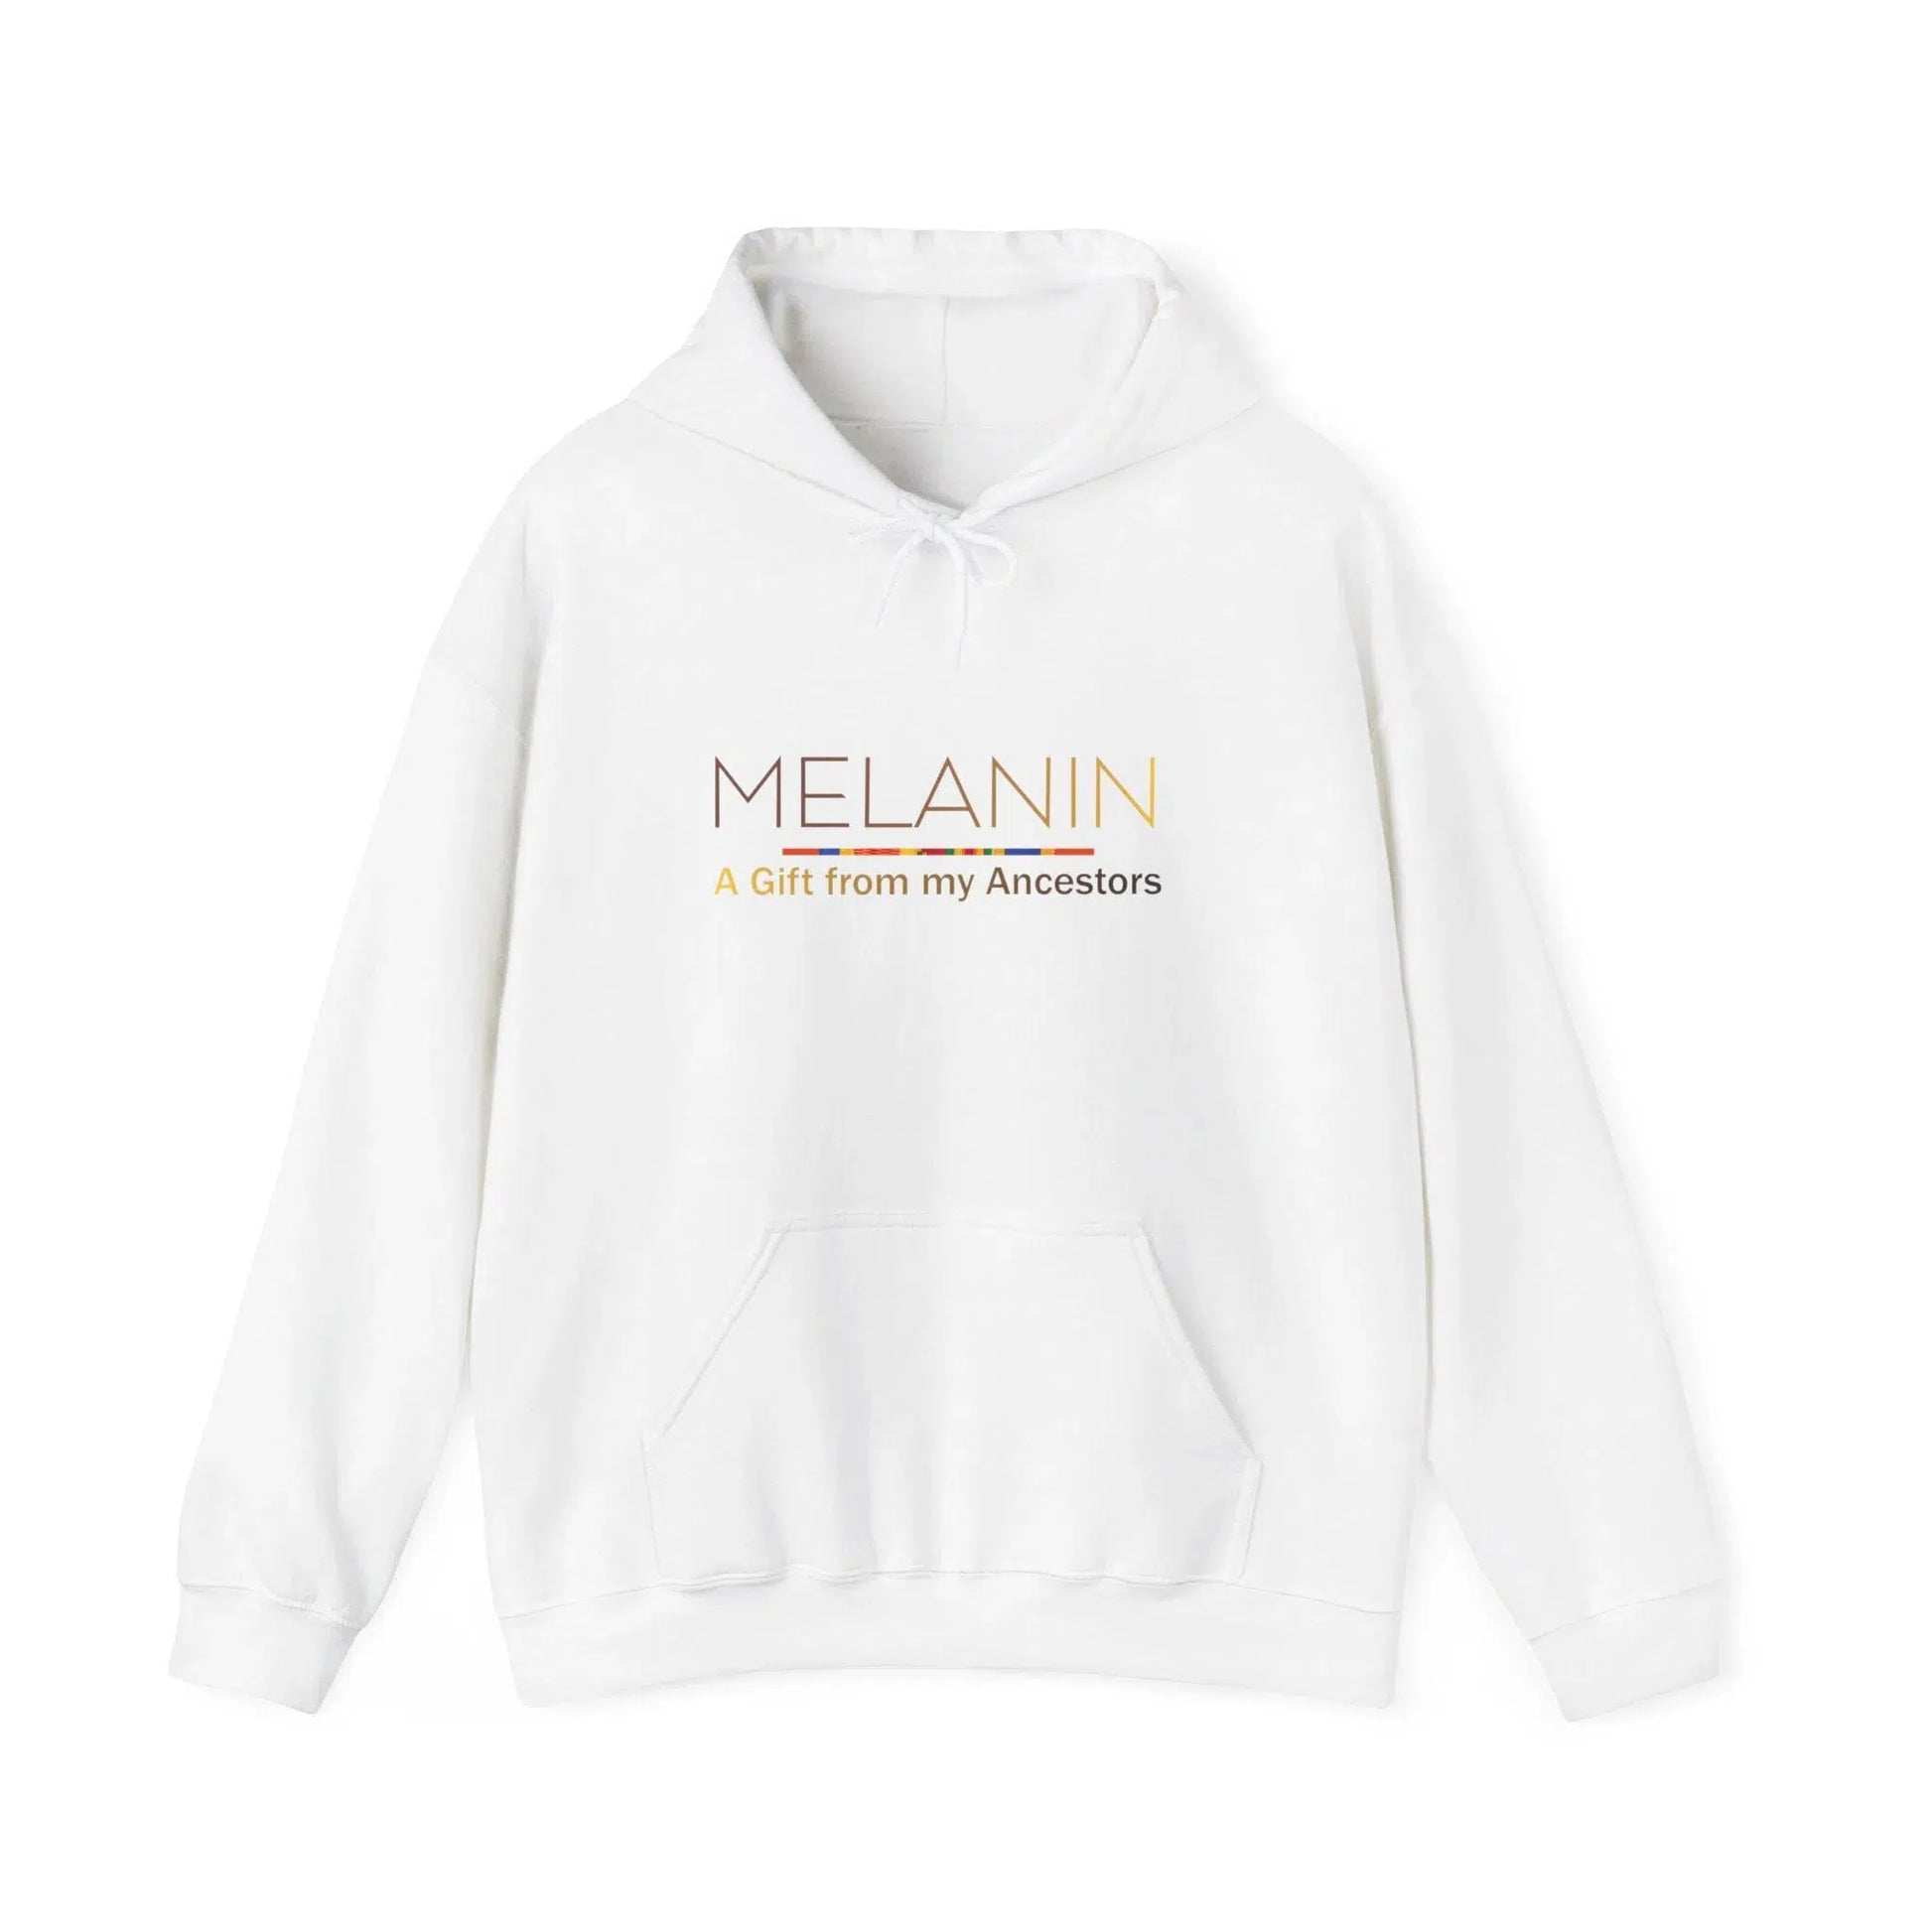 Melanin hoodie Black Culture Hoodies